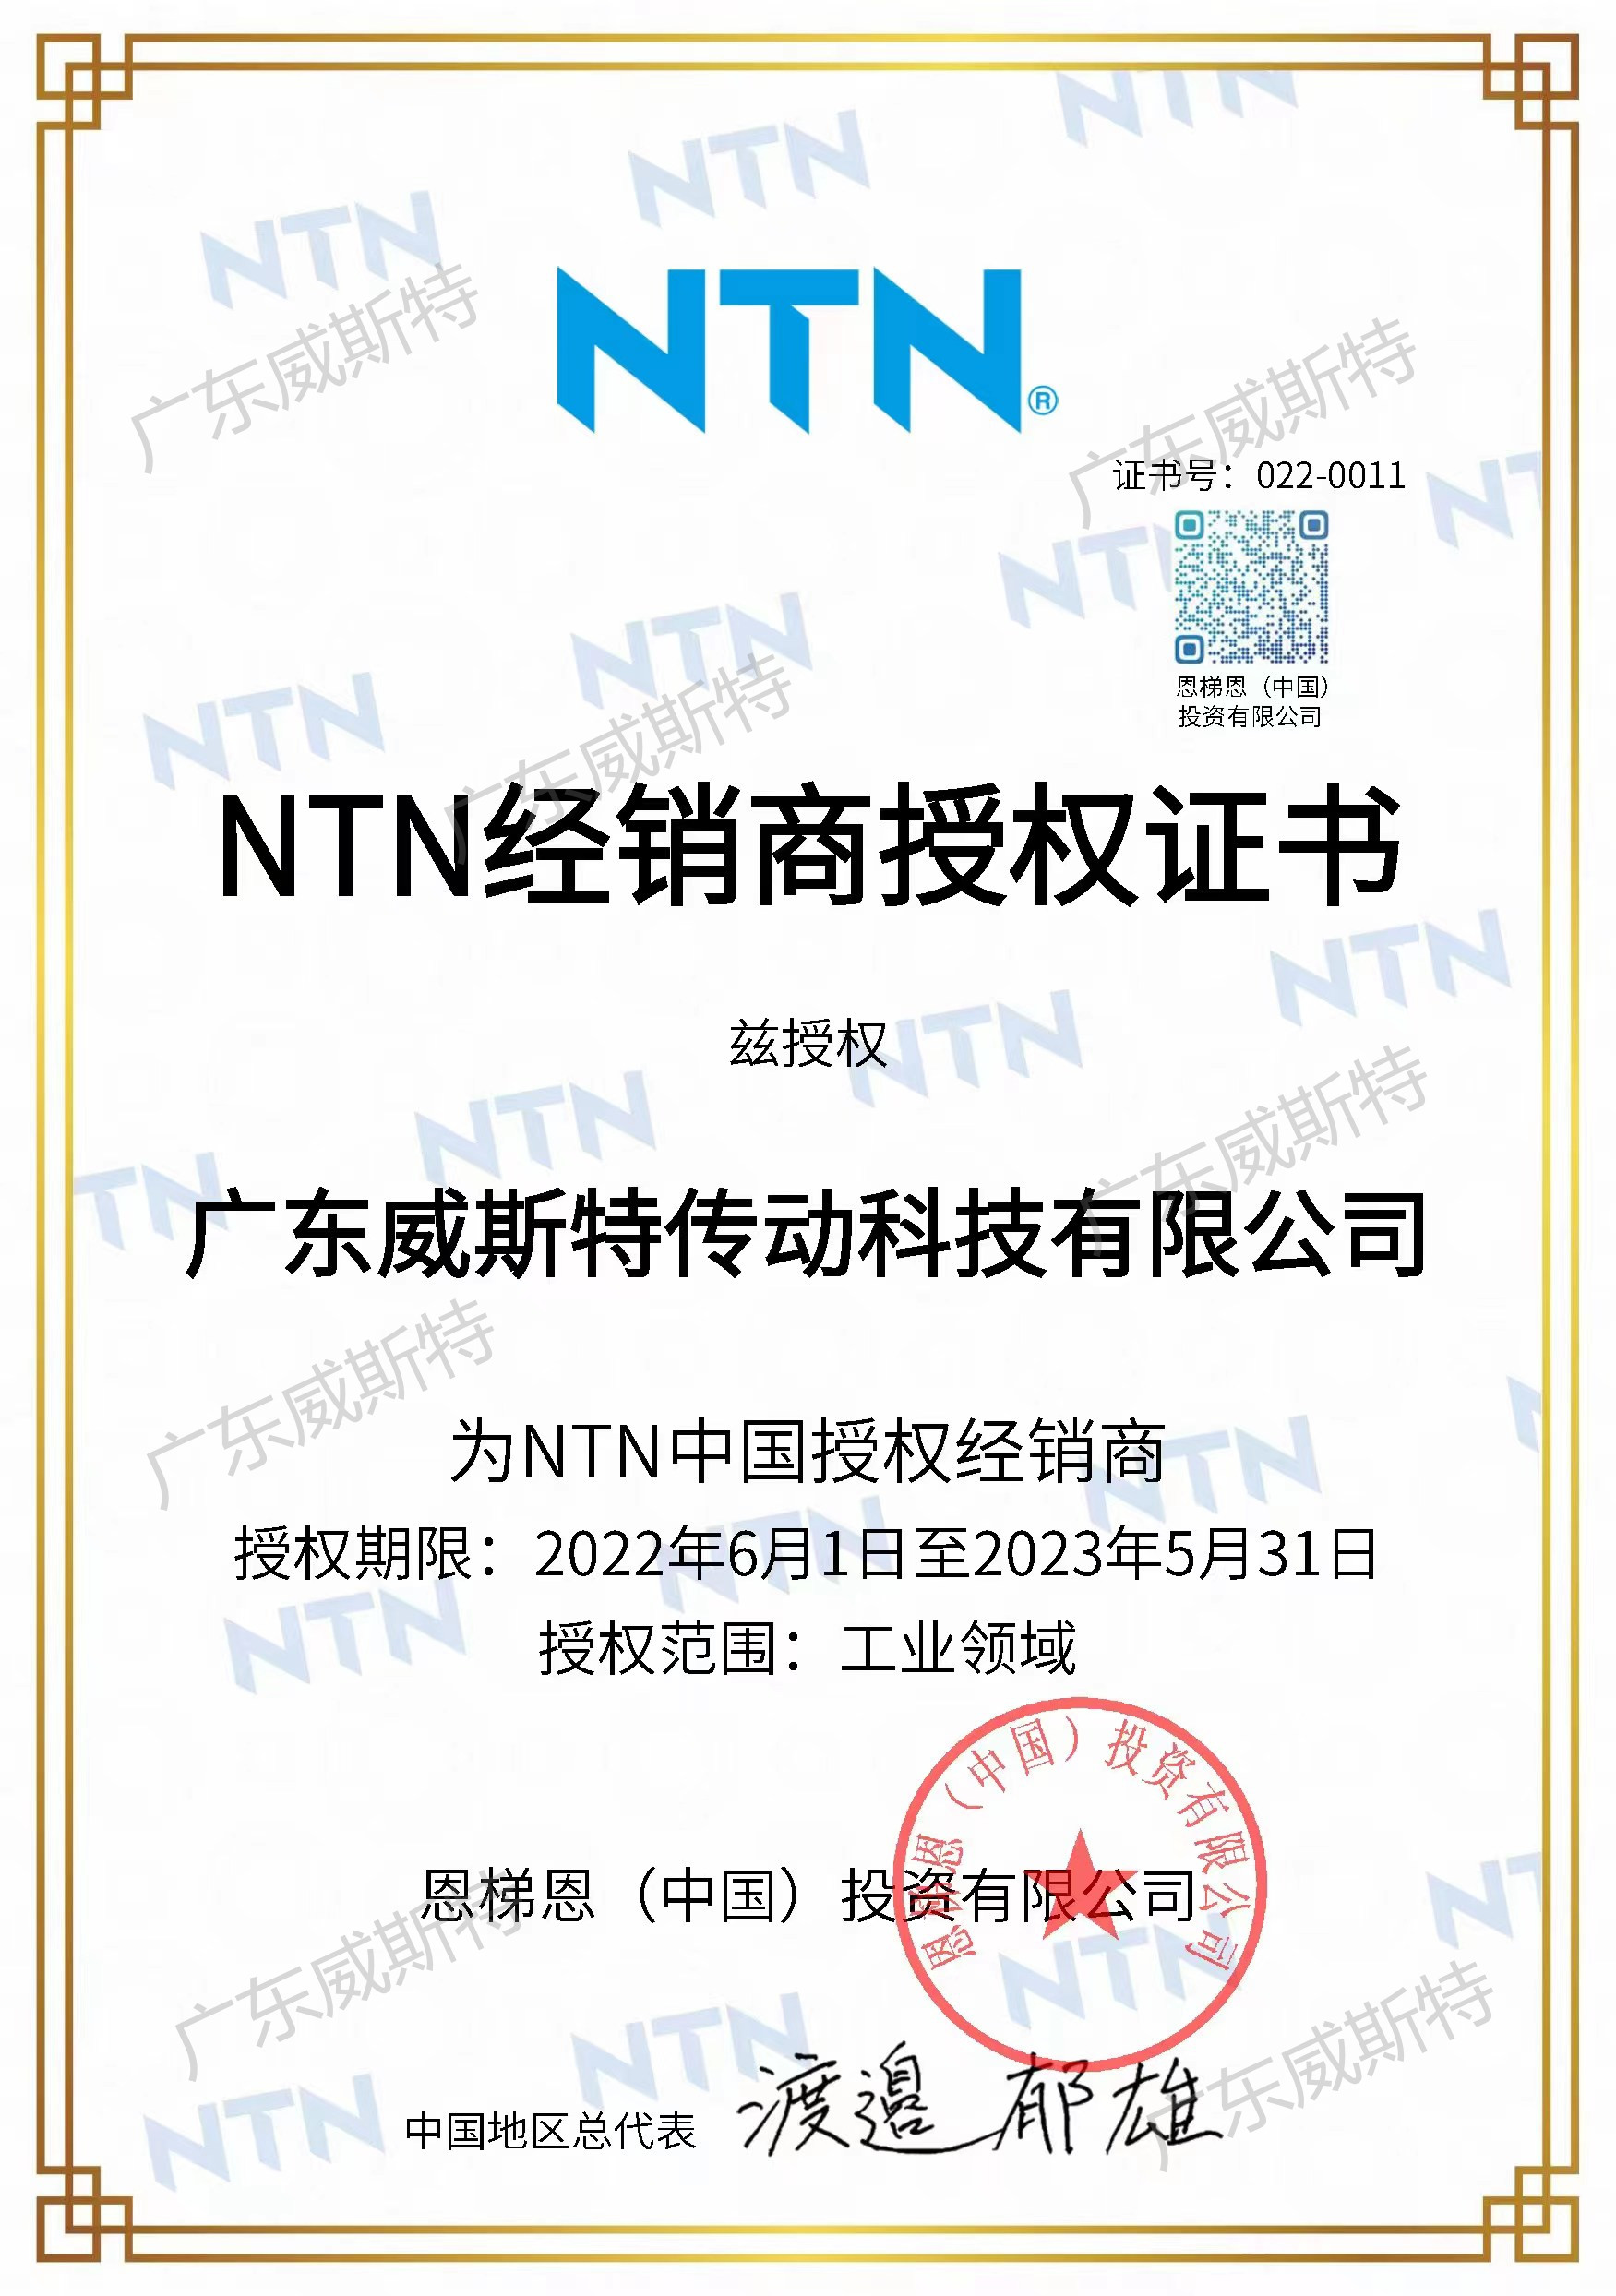 NTN2022年授权证书